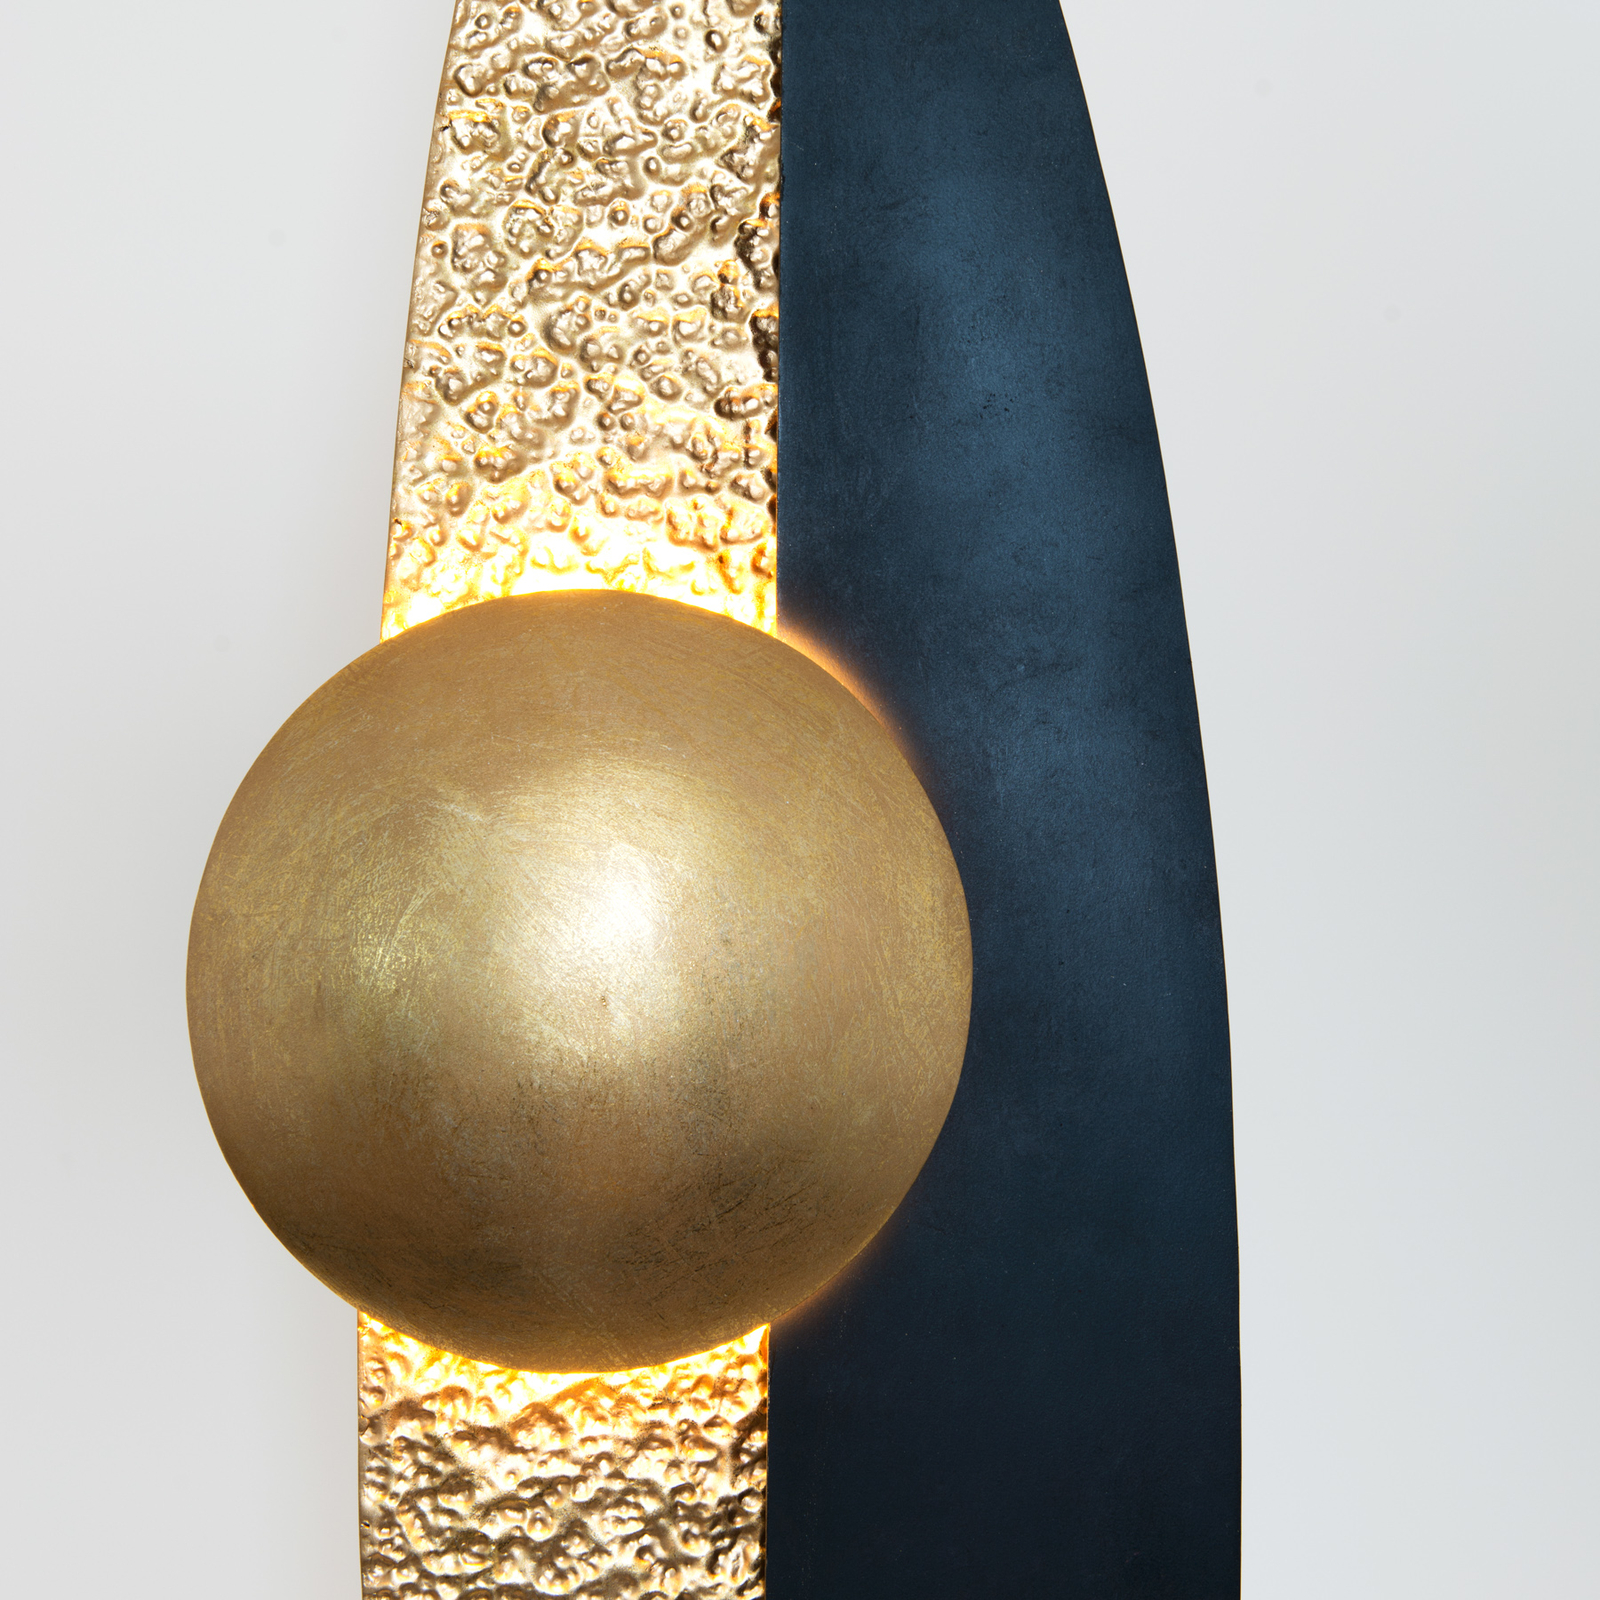 LED-Stehlampe La Presa indirekt gold/schwarz/braun